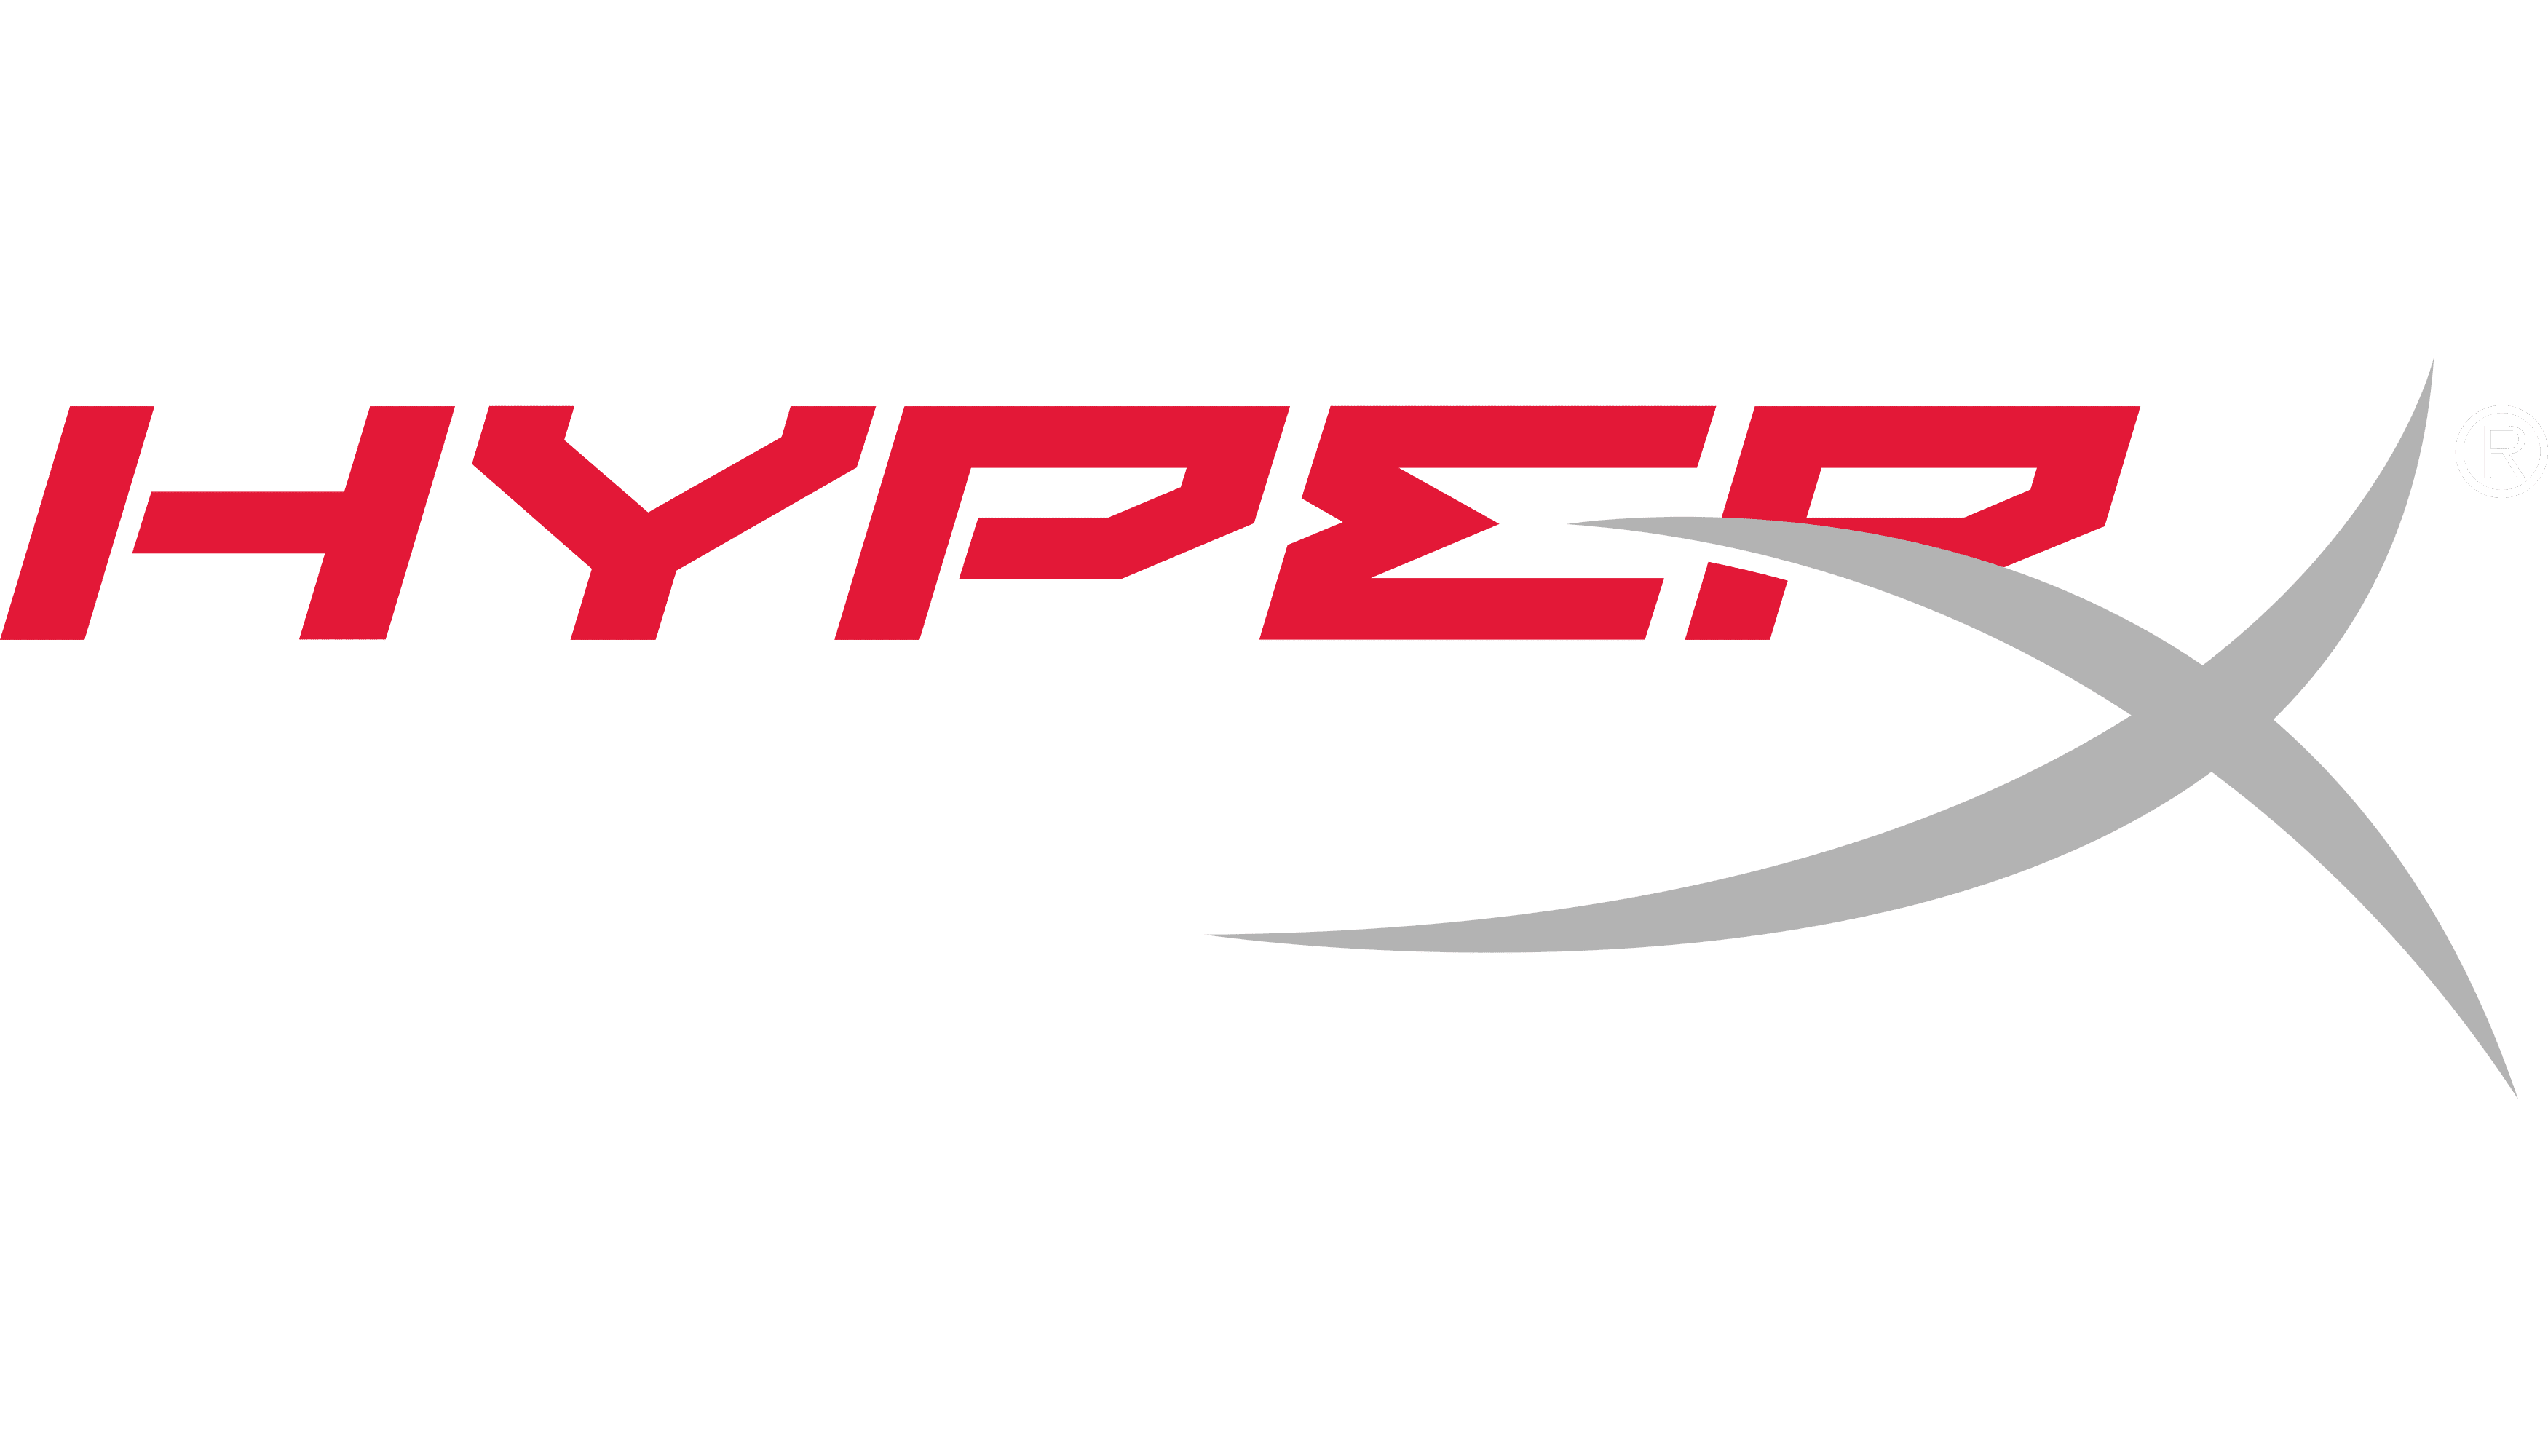 HyperX logo | significado del logotipo, png, vector